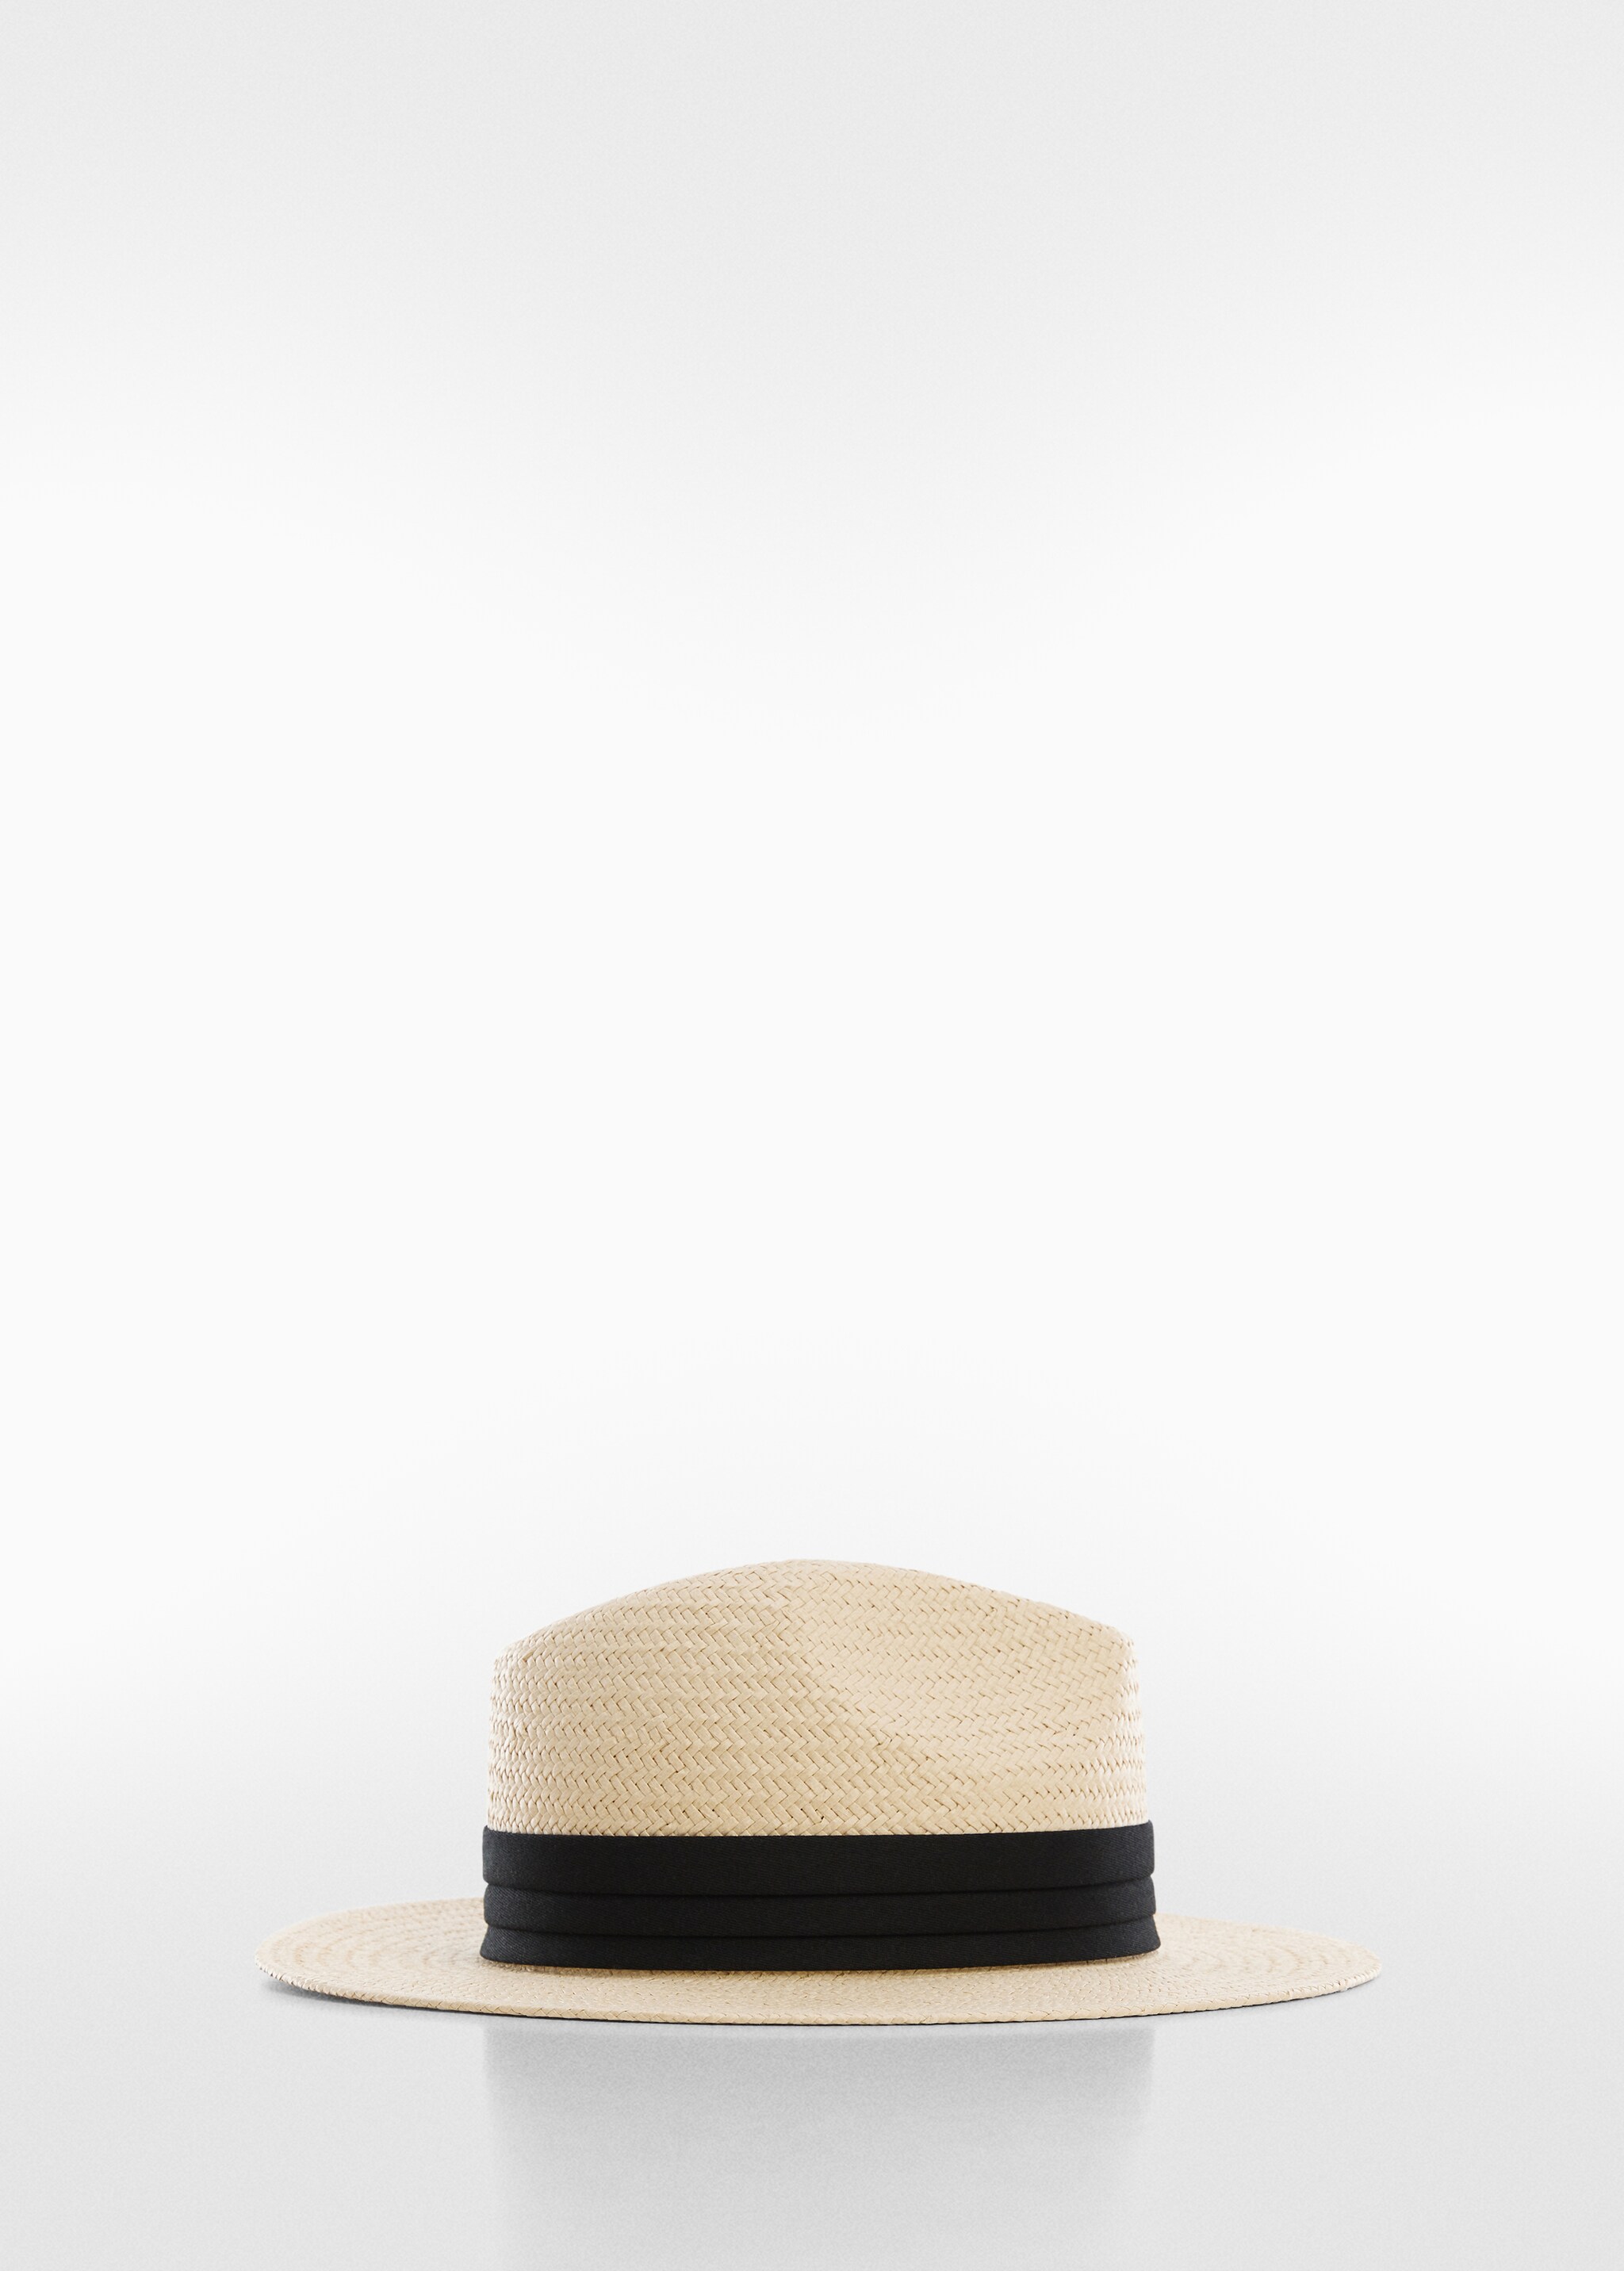 Natural fibre ribbon hat  - Изделие без модели